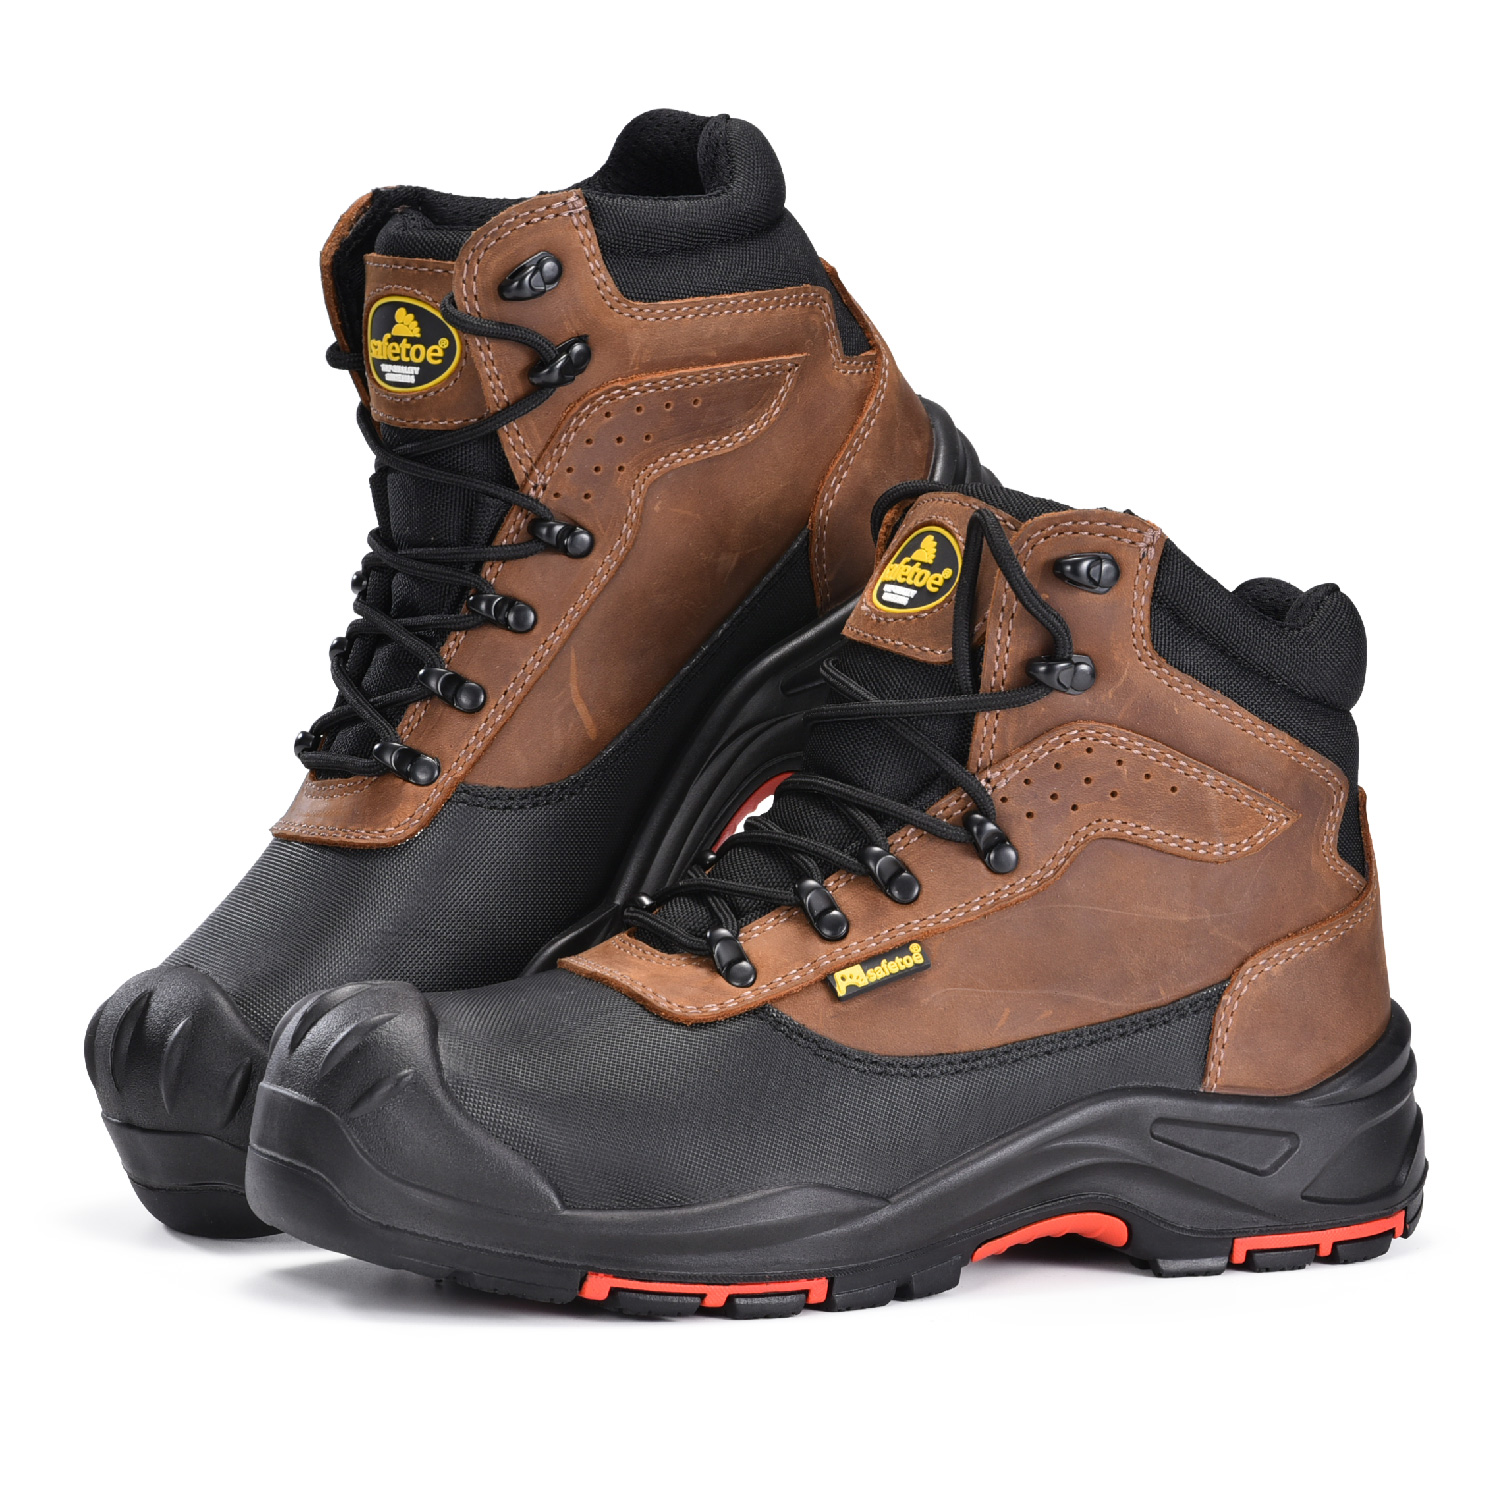 Las botas de seguridad antideslizantes de cuero nobuck más cómodas con punta compuesta para hombres M-8563